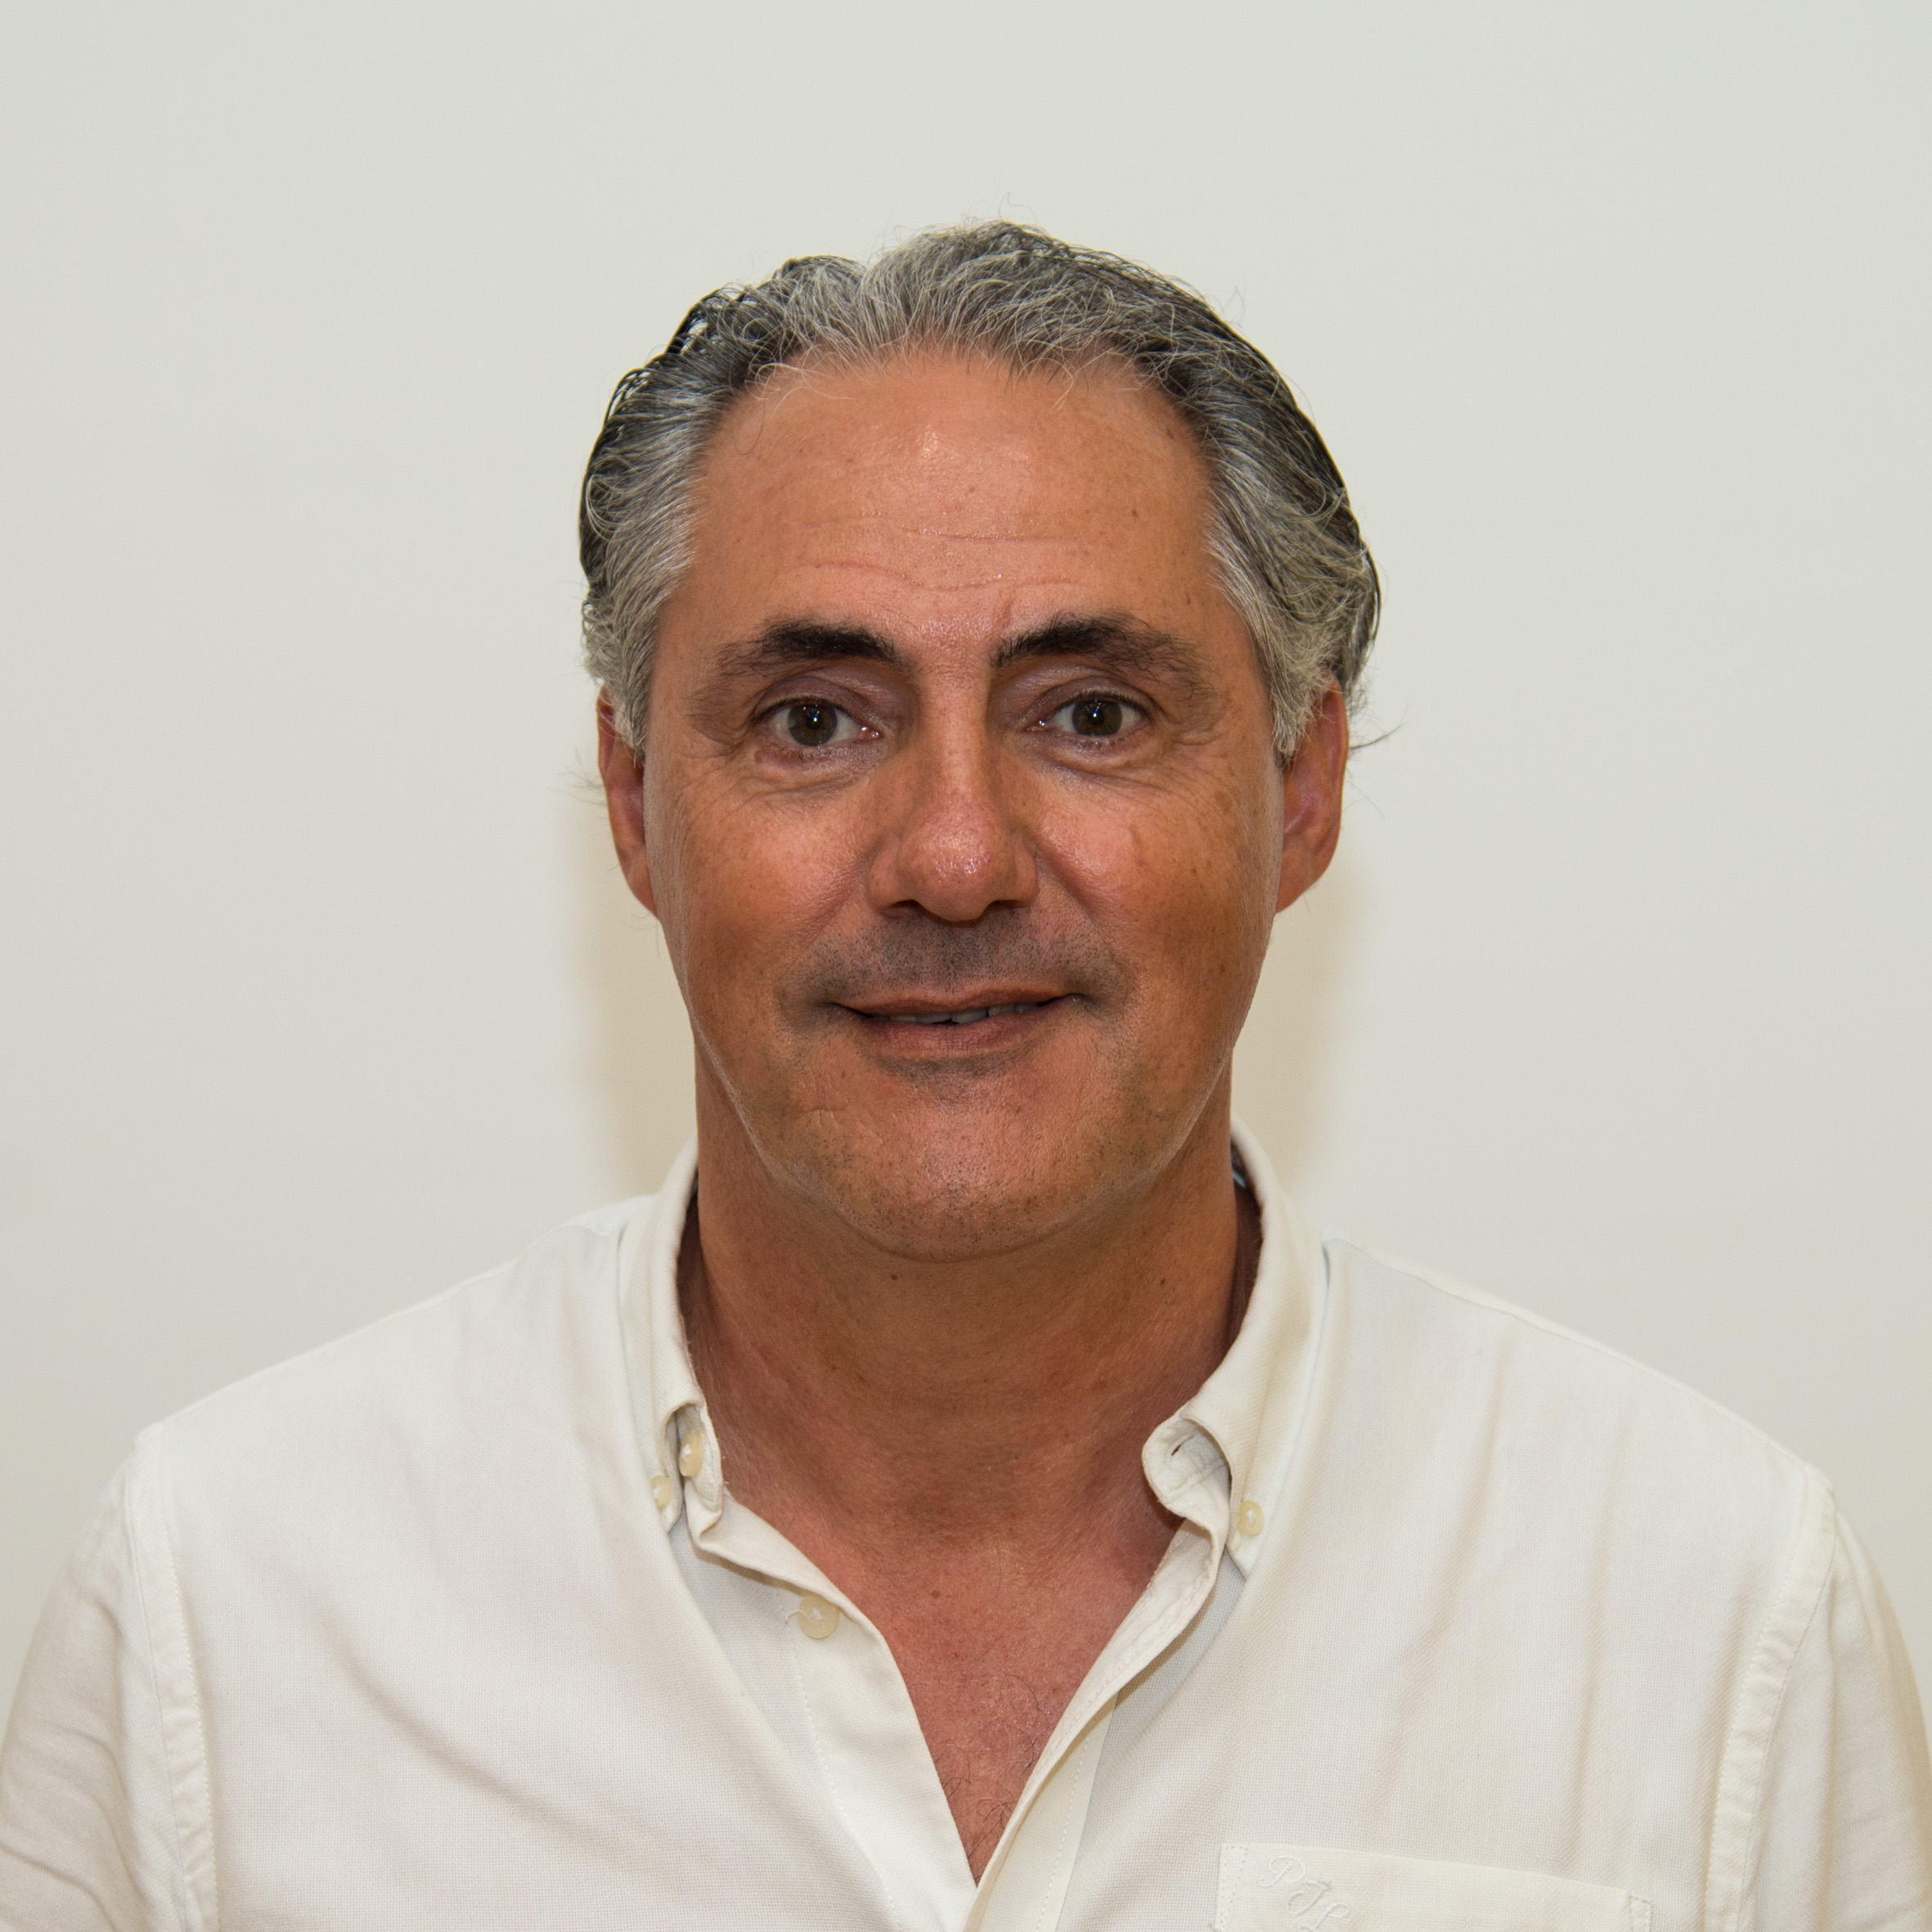 Alonso Martínez, José Manuel